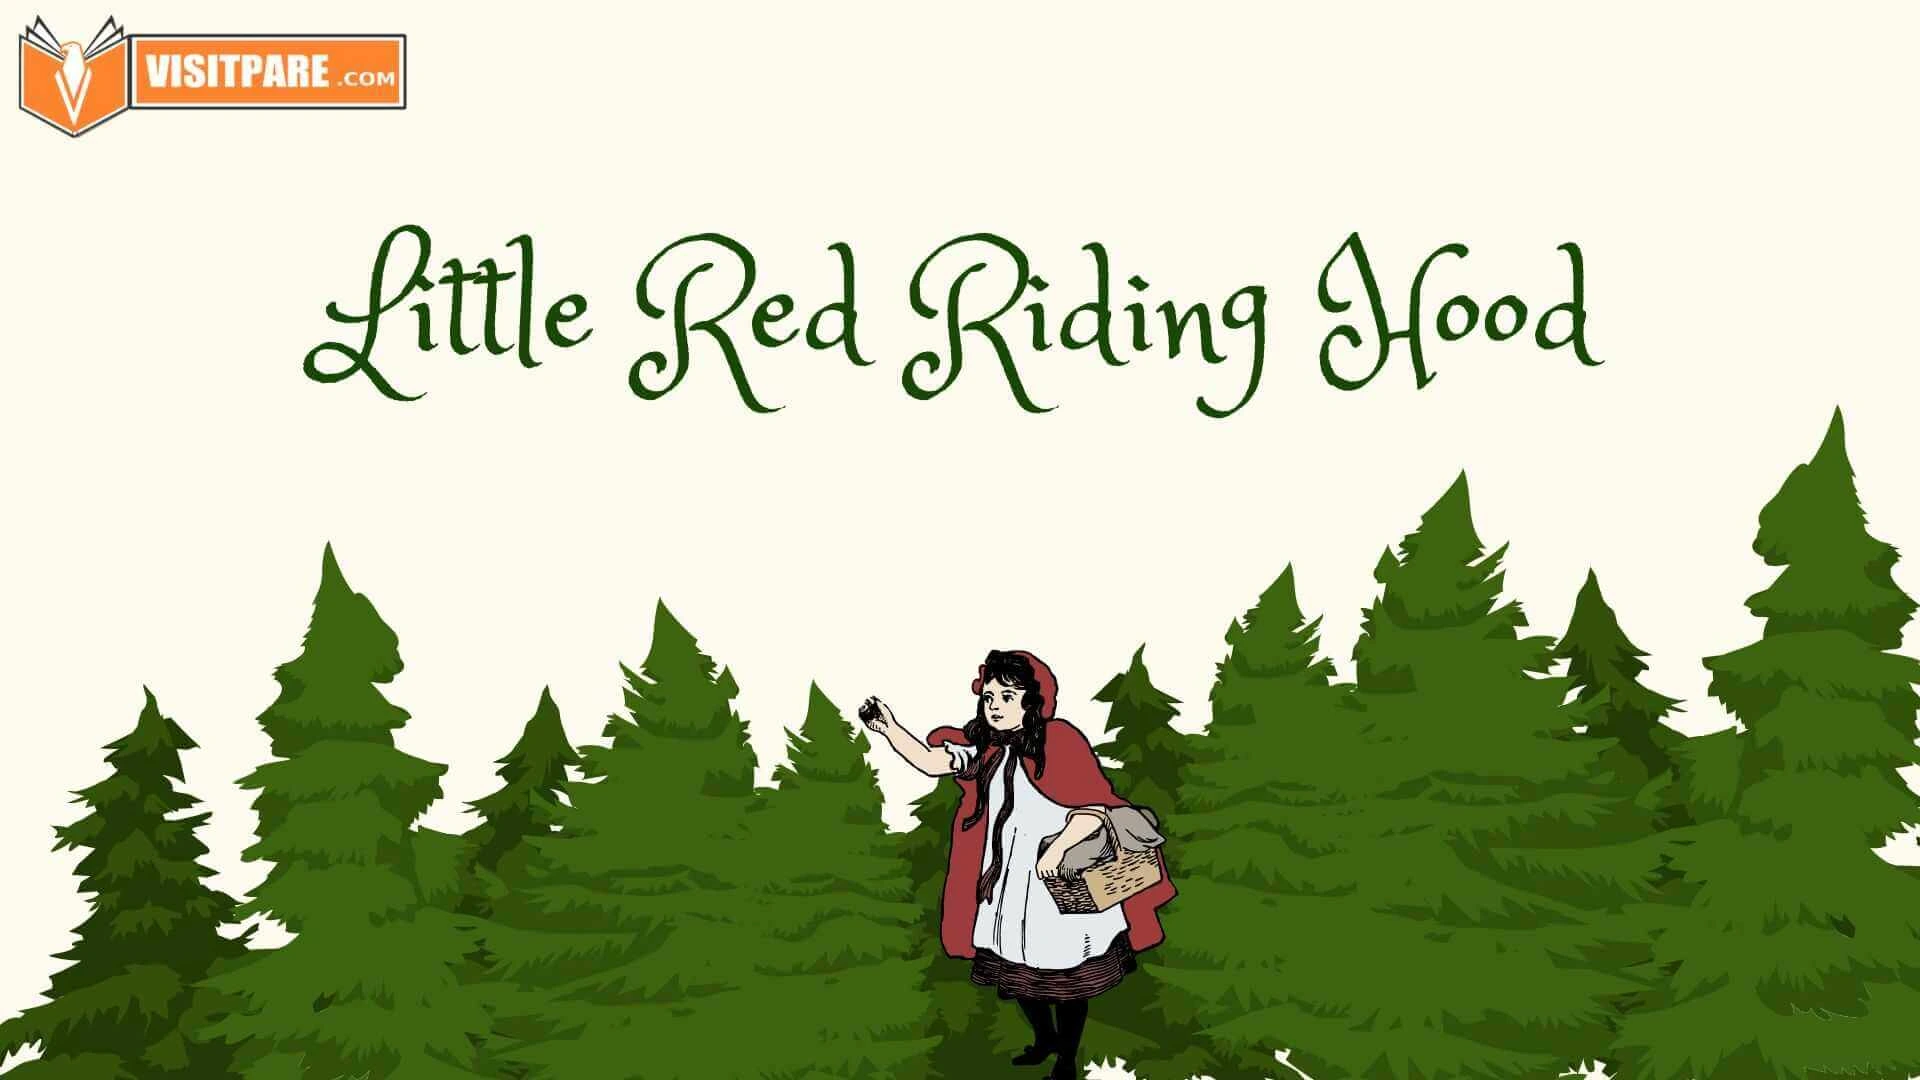 Little Red Riding Hood, Si Gadis Berjubah Merah